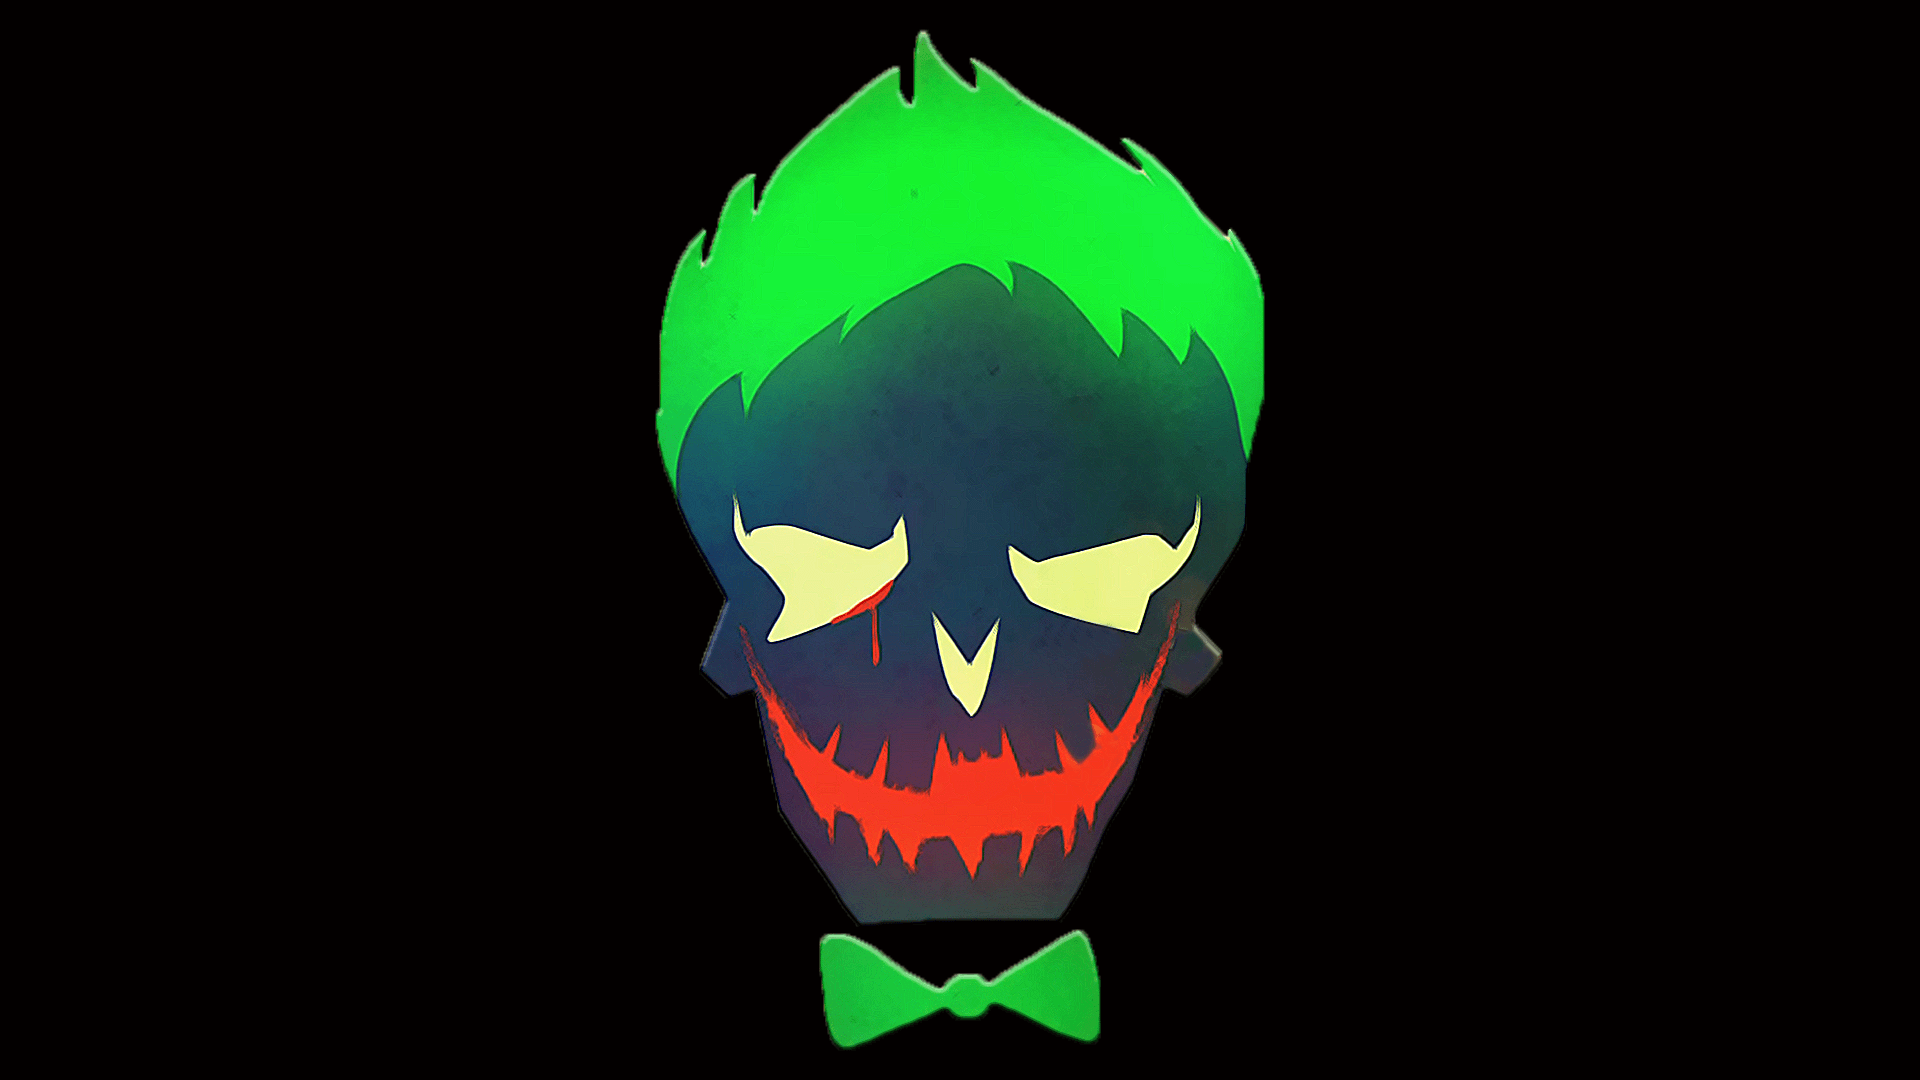 Joker HD wallpaper for iphone